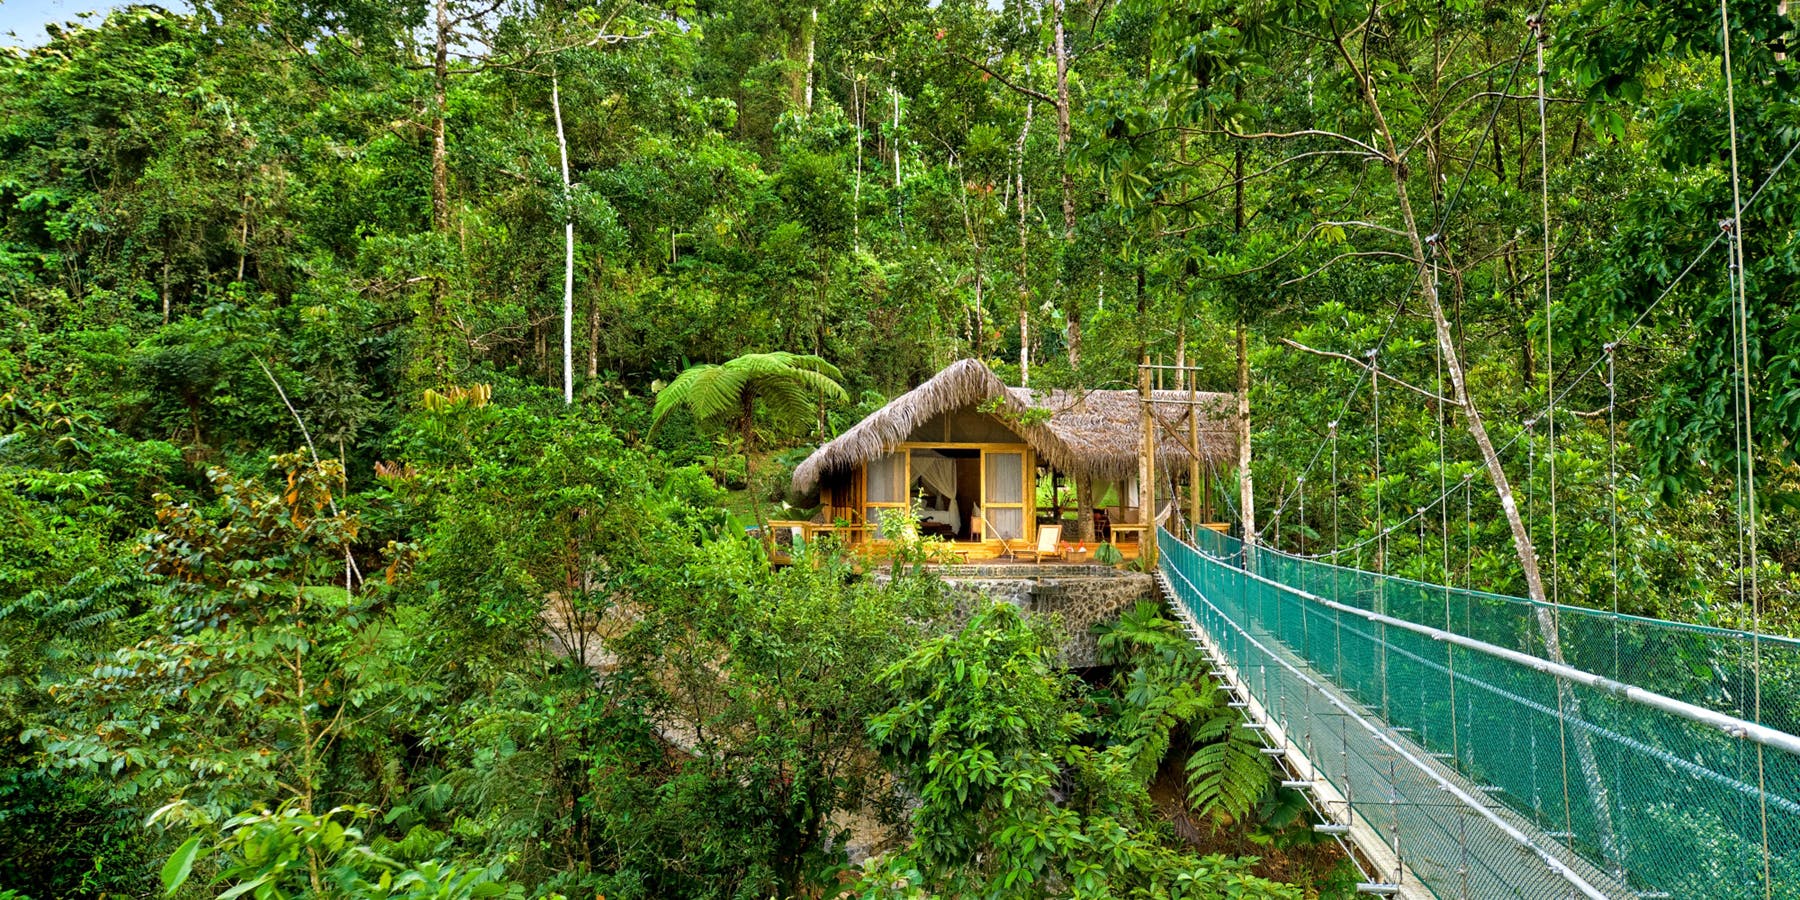 Pacuare Lodge, Costa Rica